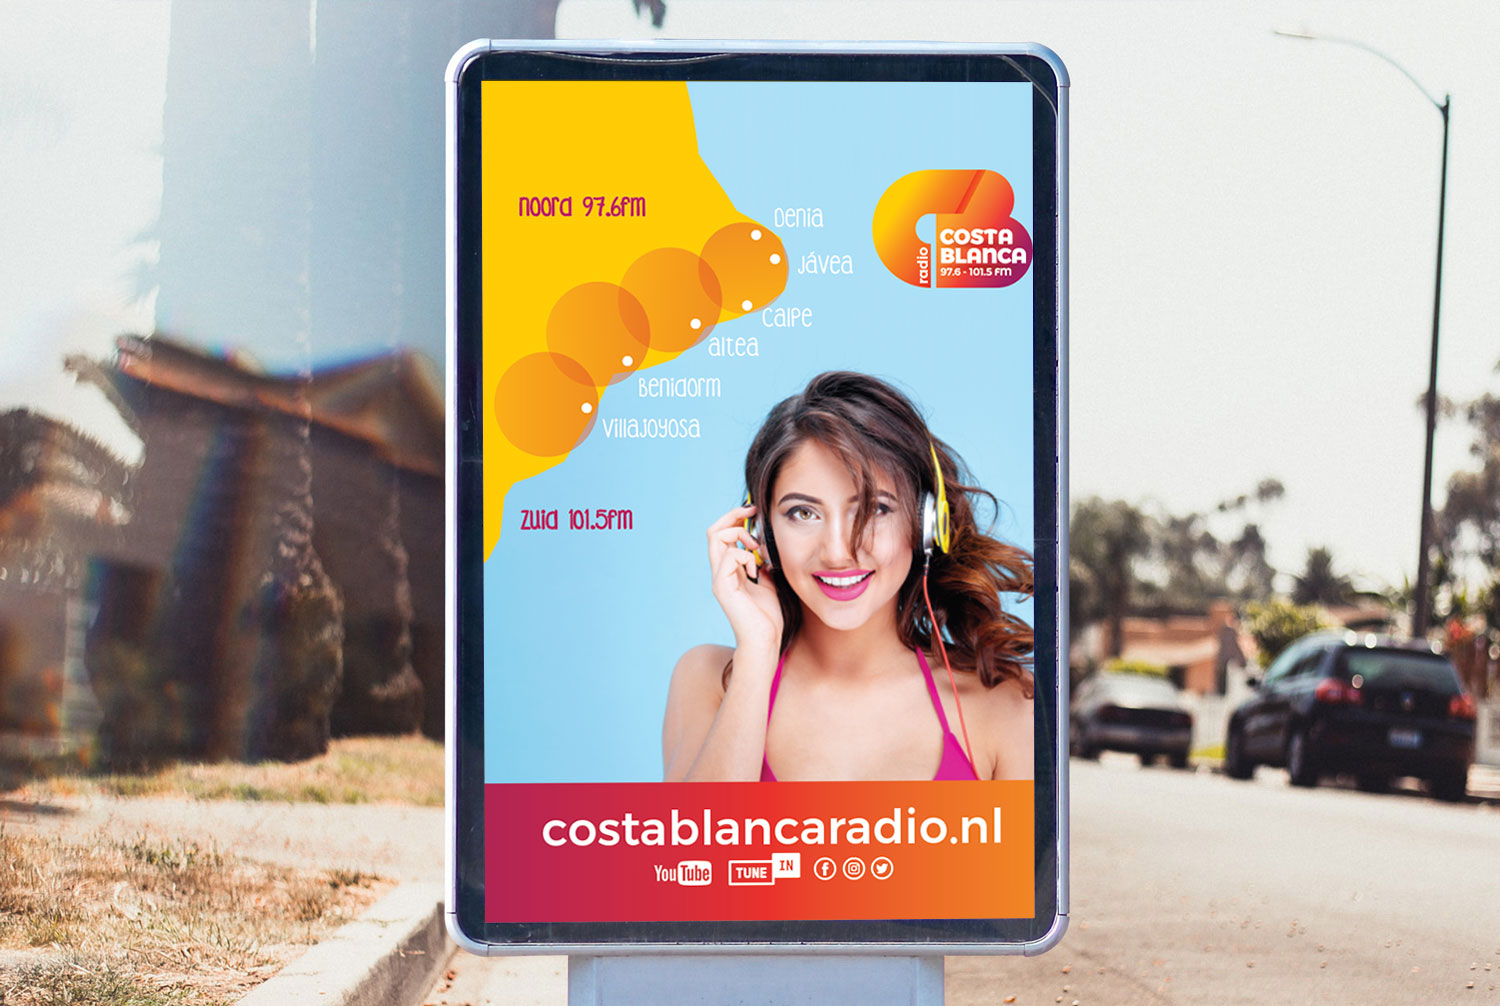 Reclamebord bushalte Costa Blanca Radio ontwerp van Reclamebureau costa blanca